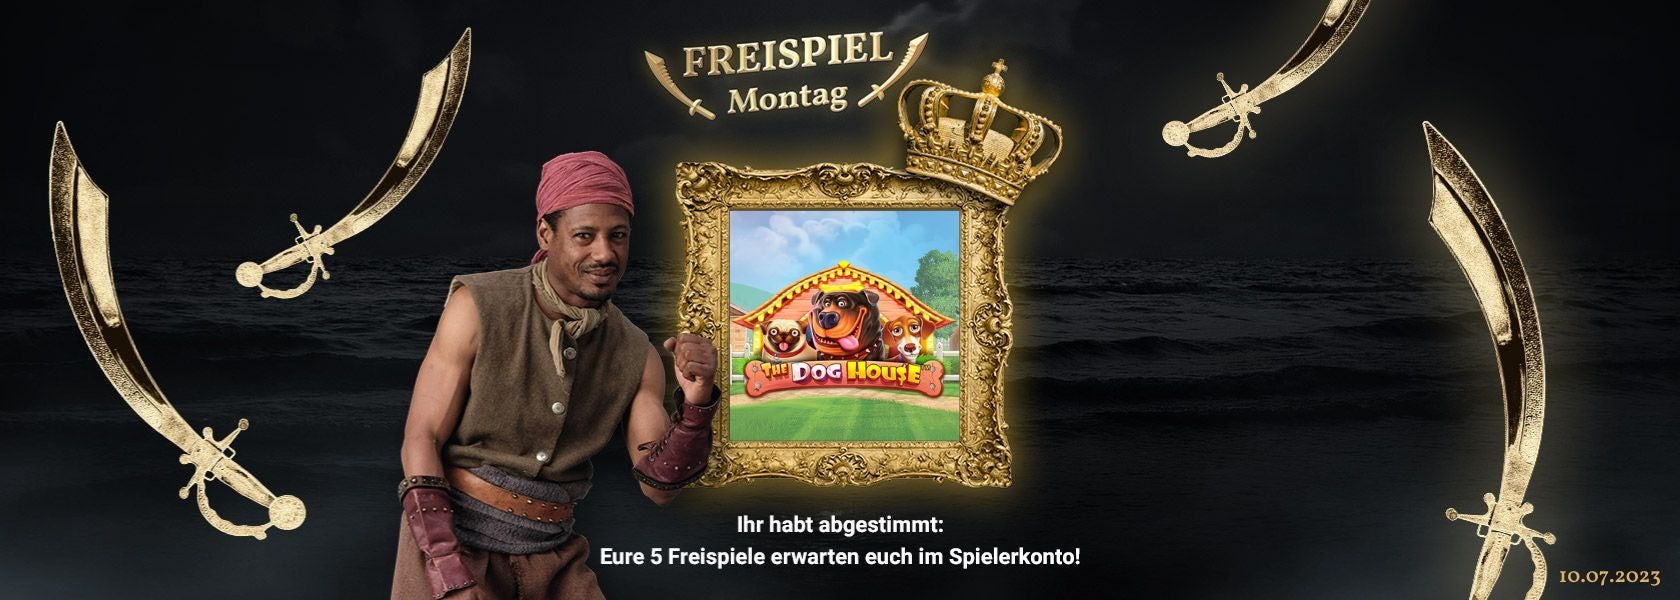 jackpot-piraten-freispiel-montag-10-07-2023